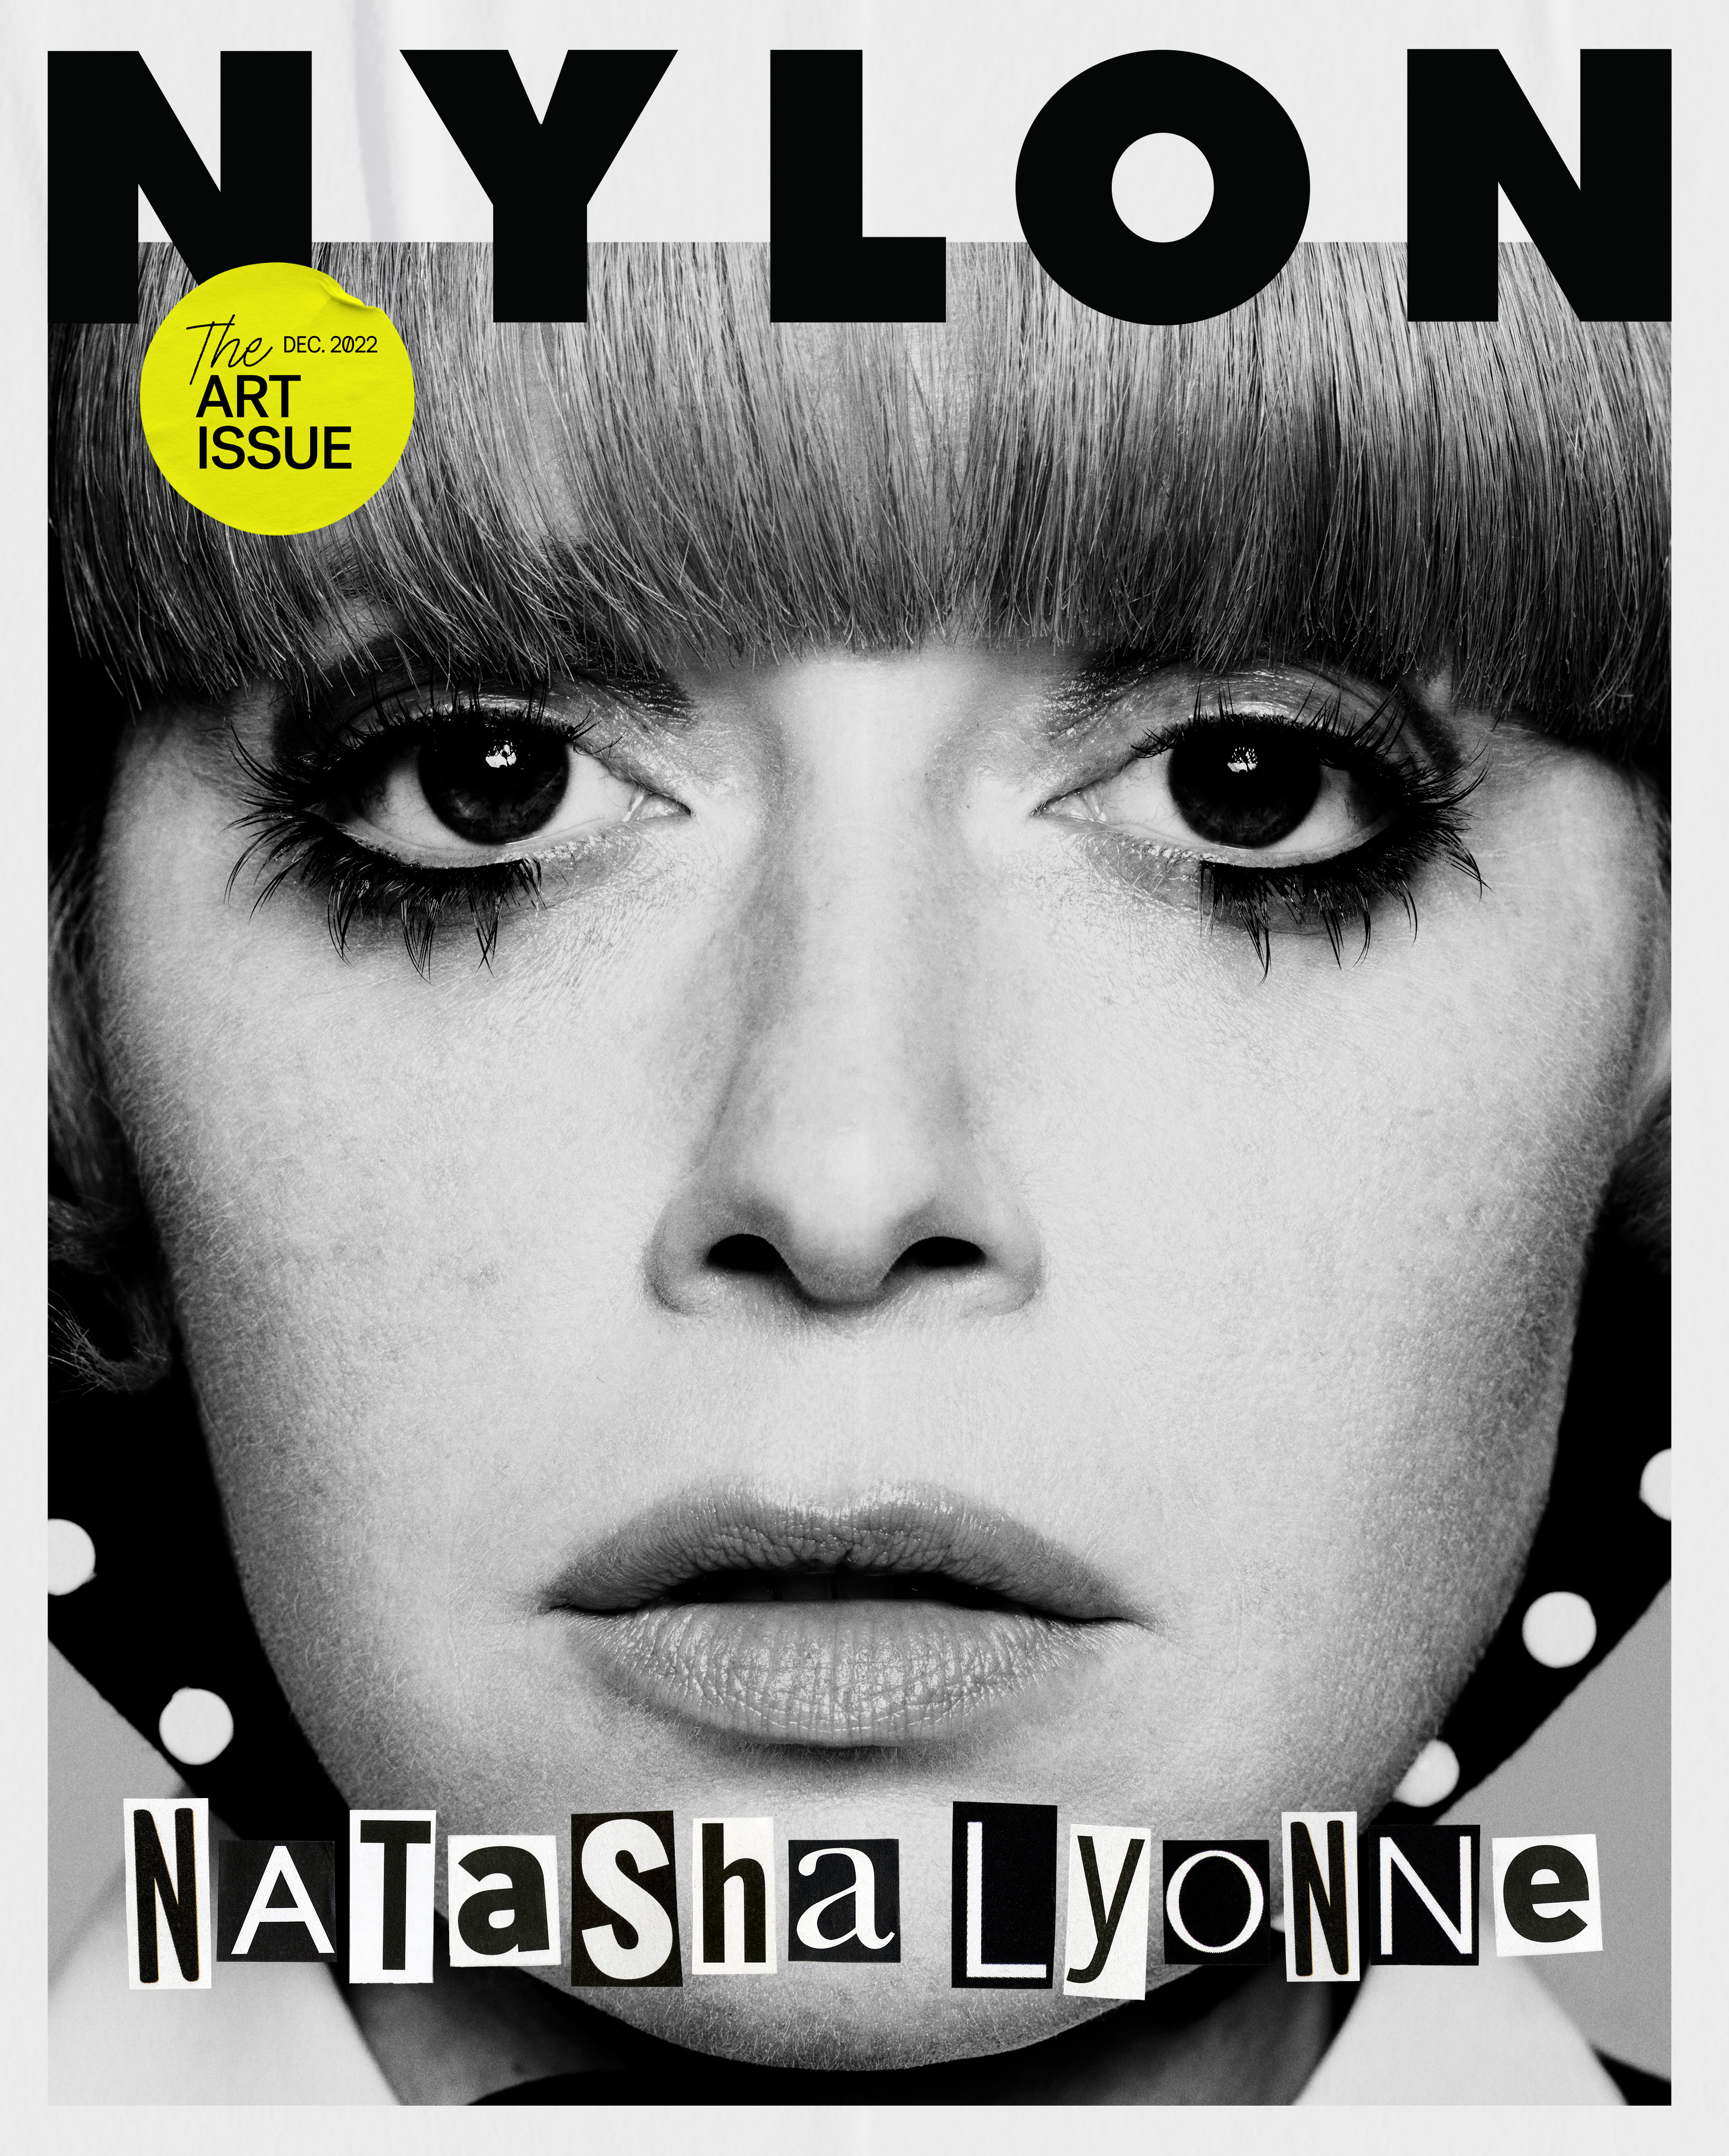 NYLON - “Natasha Lyonne” December 2022